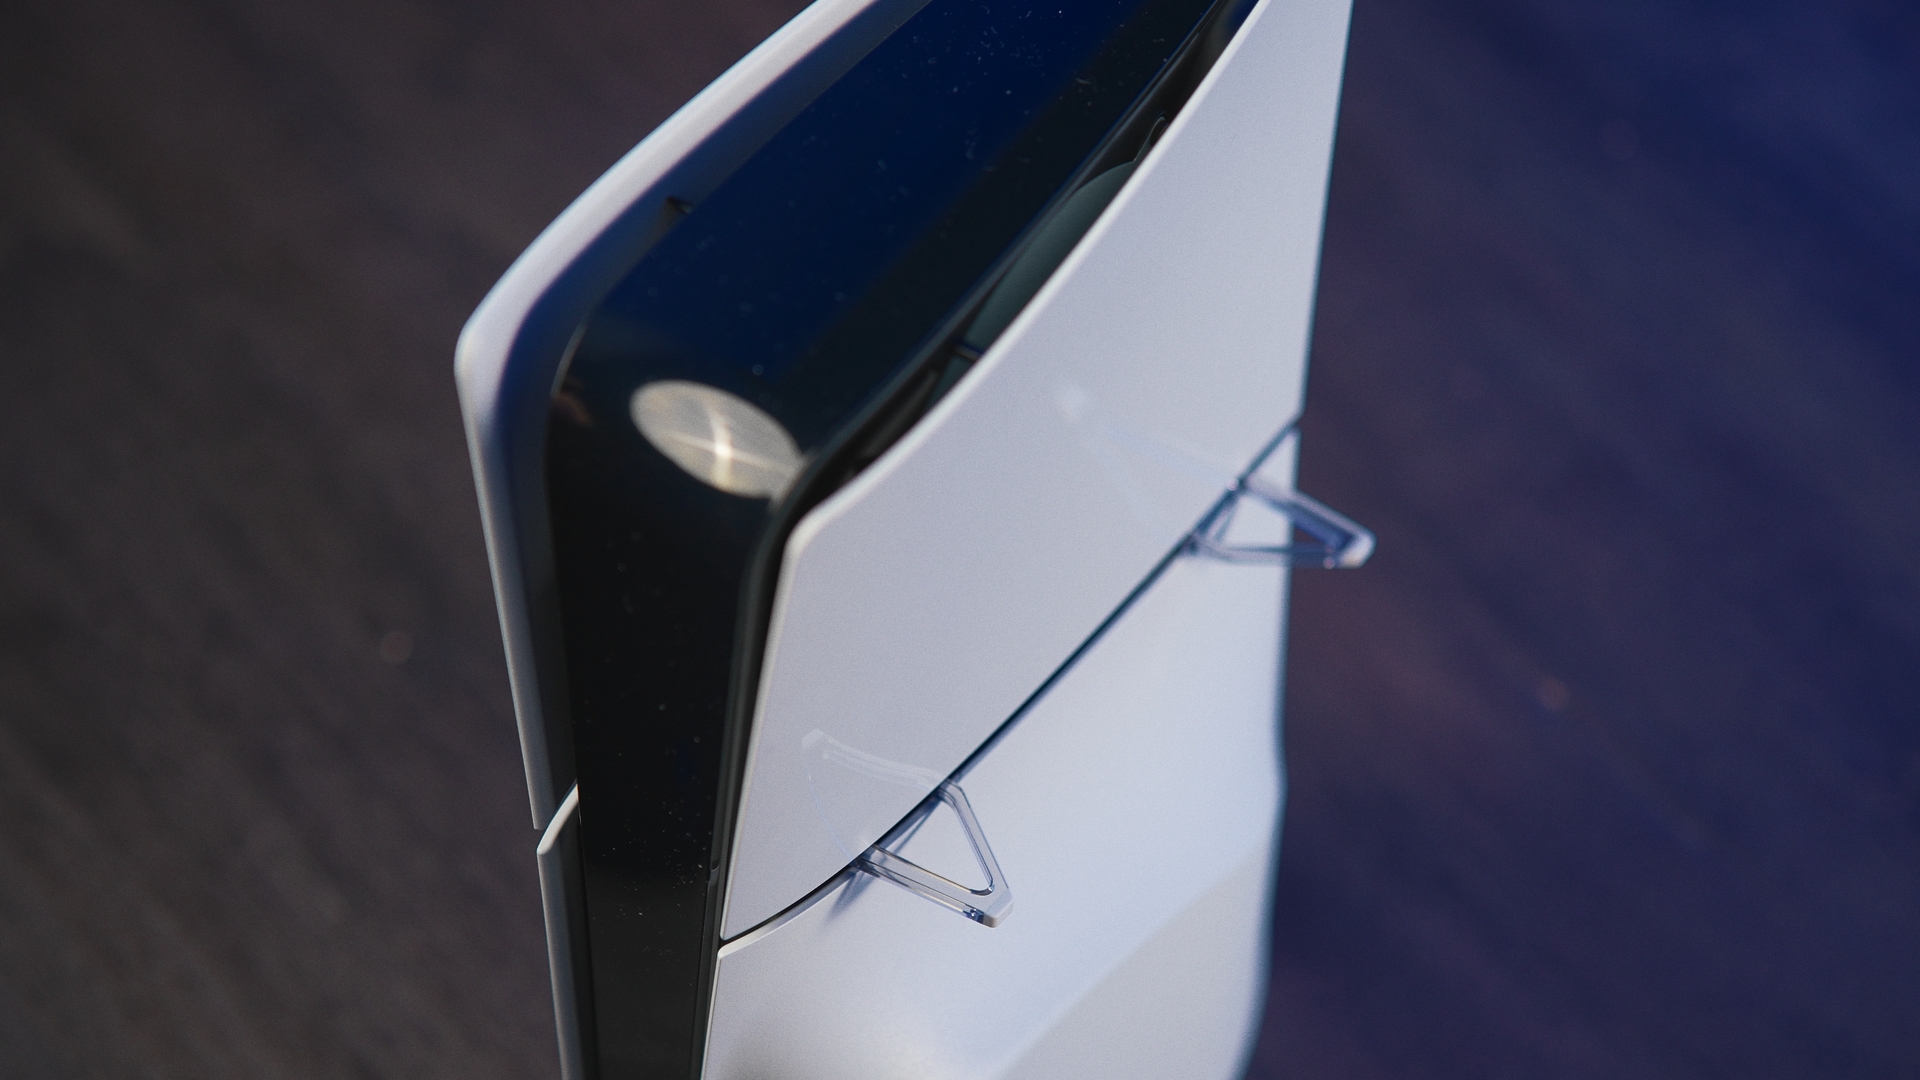 PS5 Slim : La veille de sa sortie, une offre est déjà disponible !